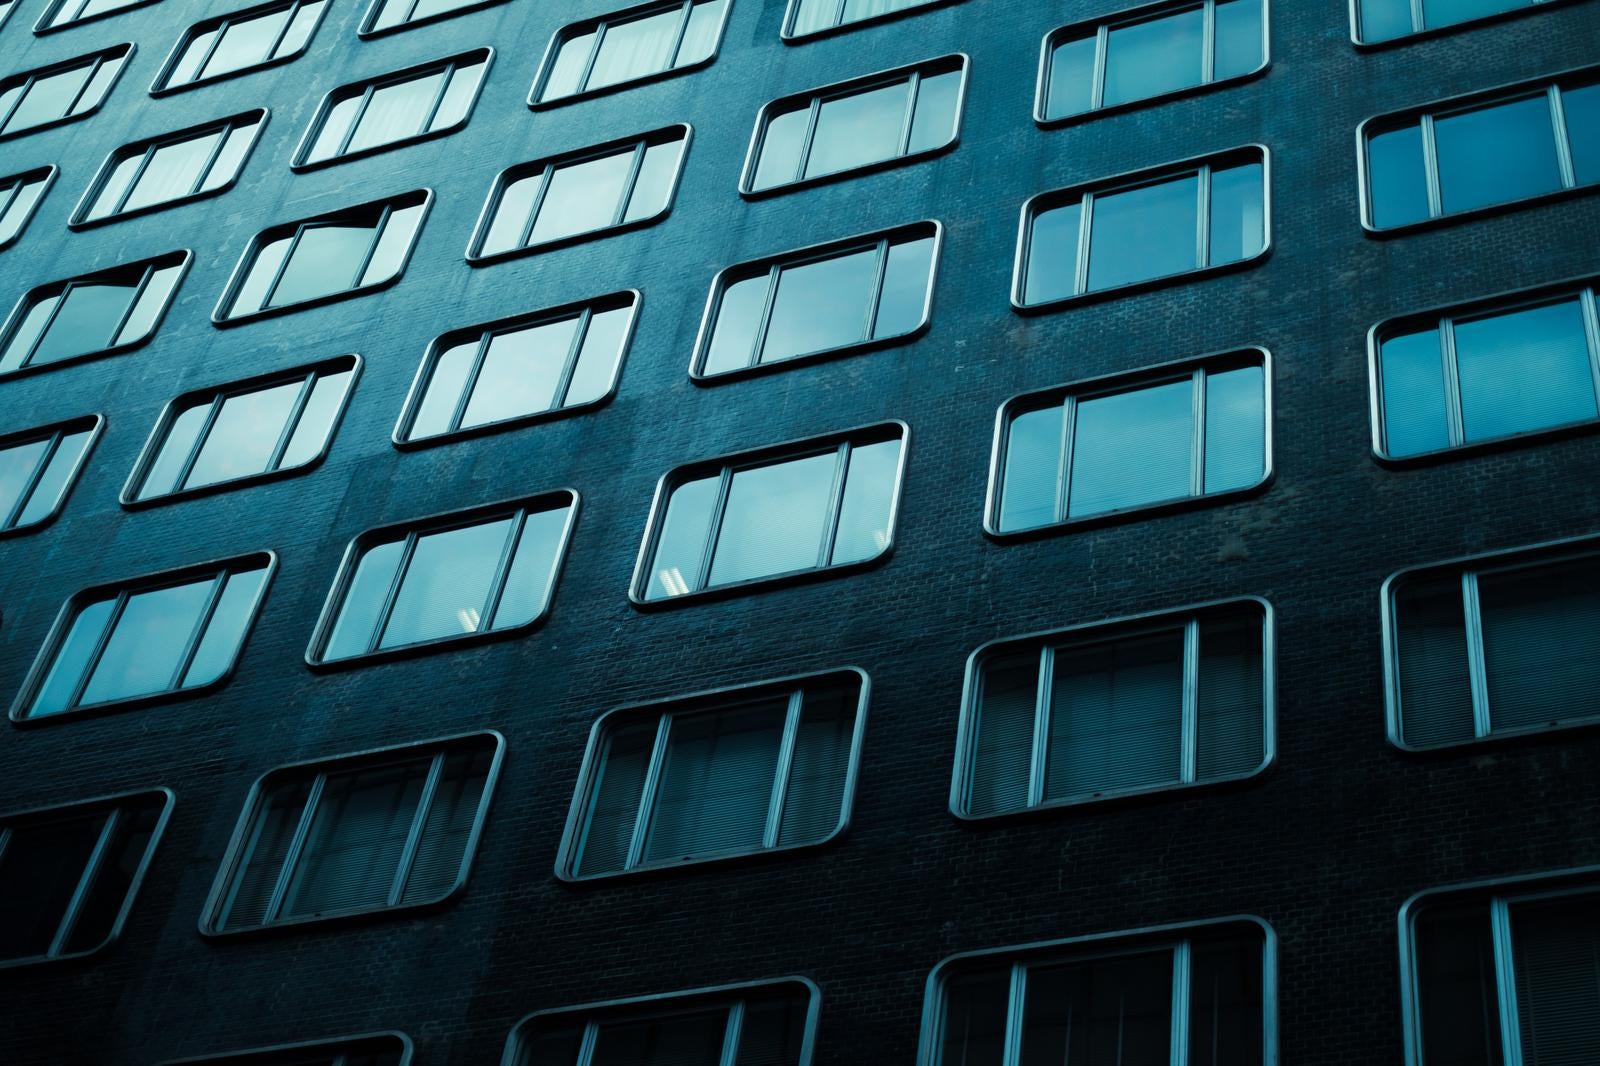 「ビルの窓 反射と視界のデザイン要素」の写真